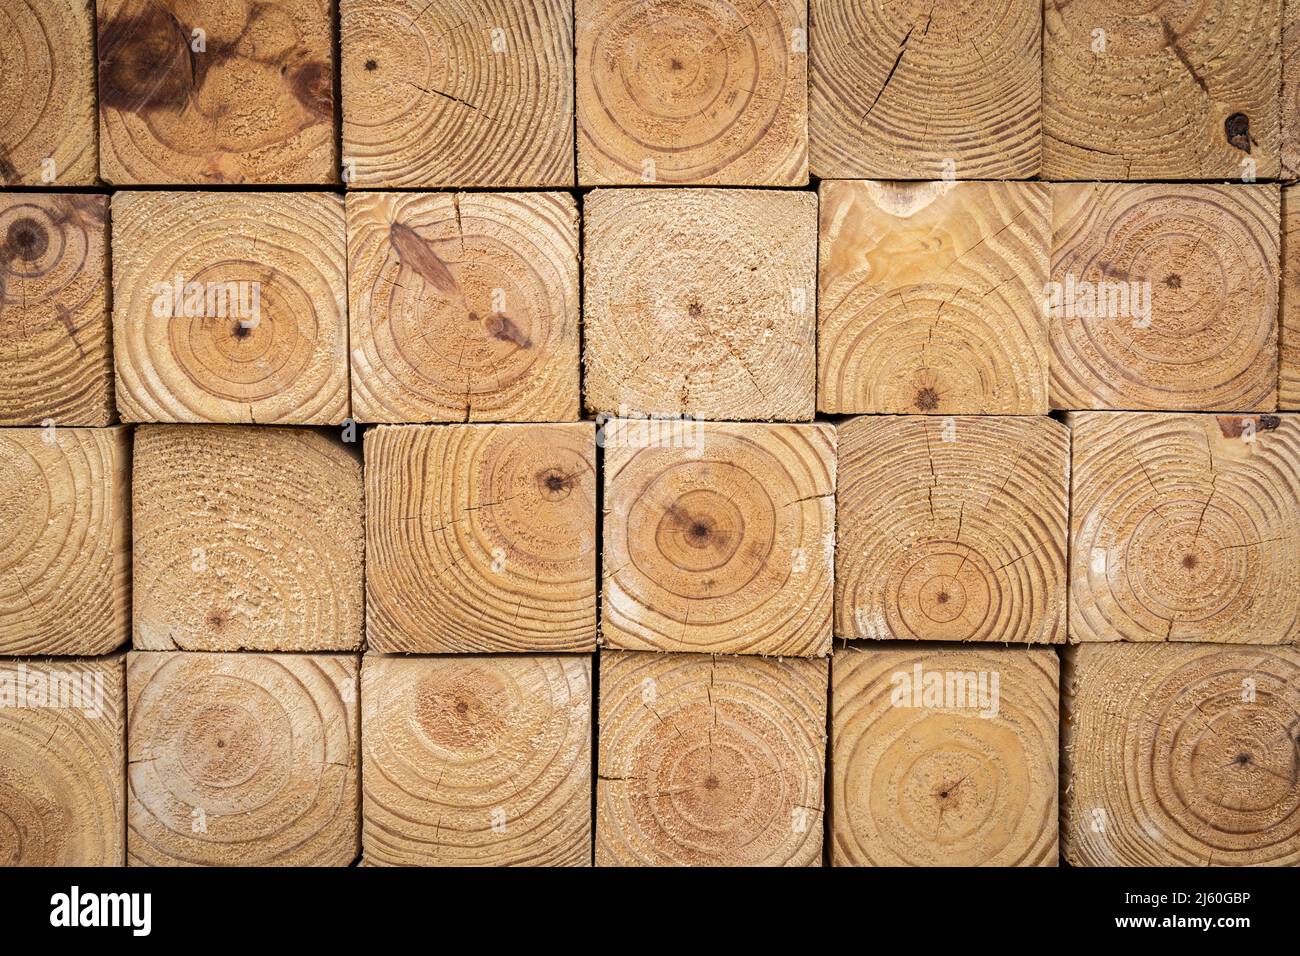 Vue du profil d'extrémité du bois de 4 po x 4 po empilé, montrant le bord rugueux et le grain de bois. Banque D'Images